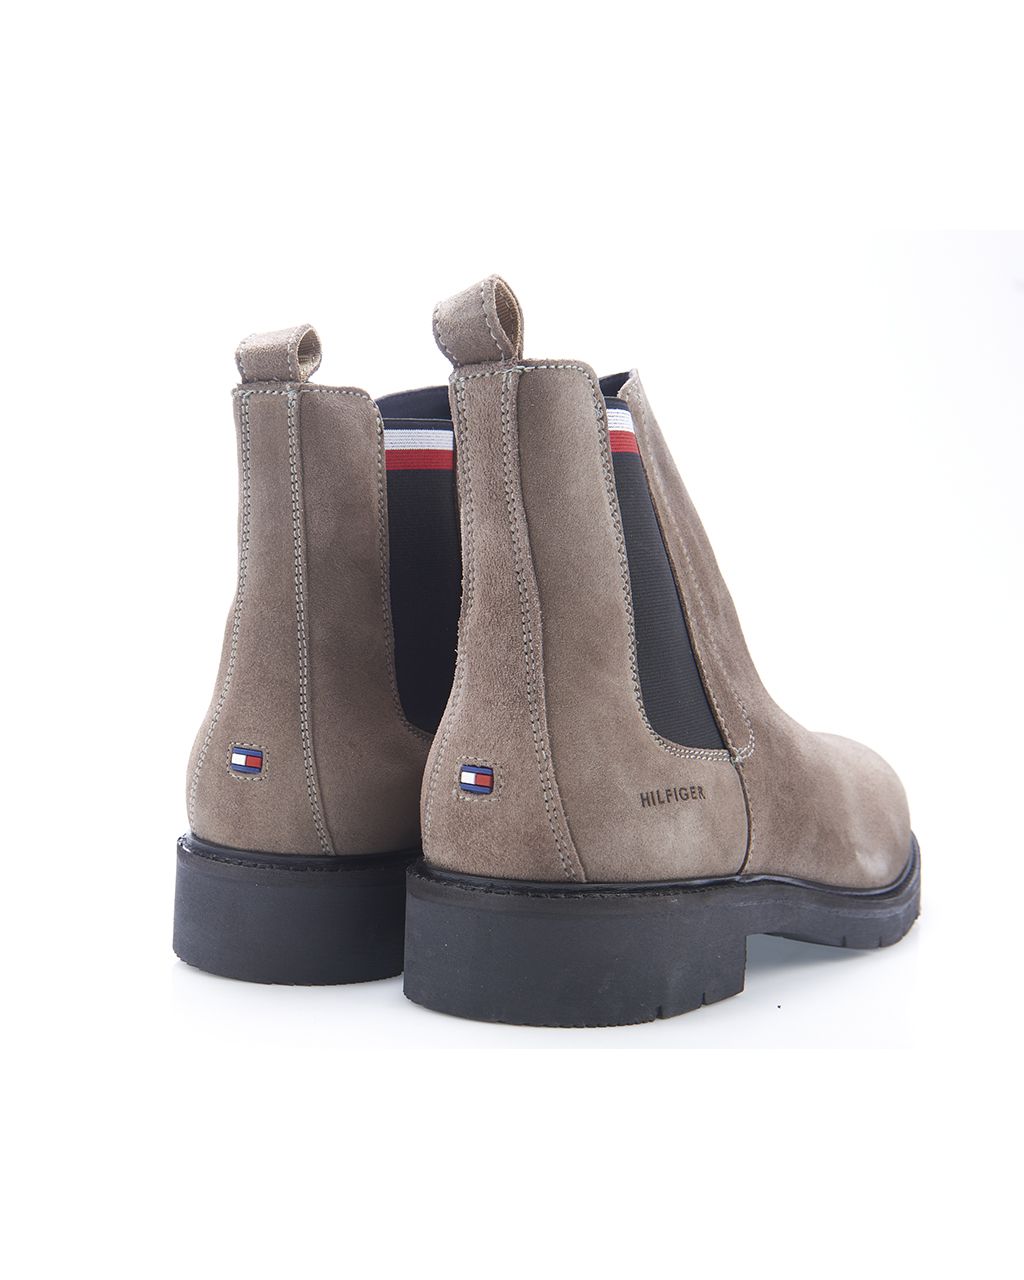 Tommy Hilfiger Menswear Boots Licht bruin 082261-001-41